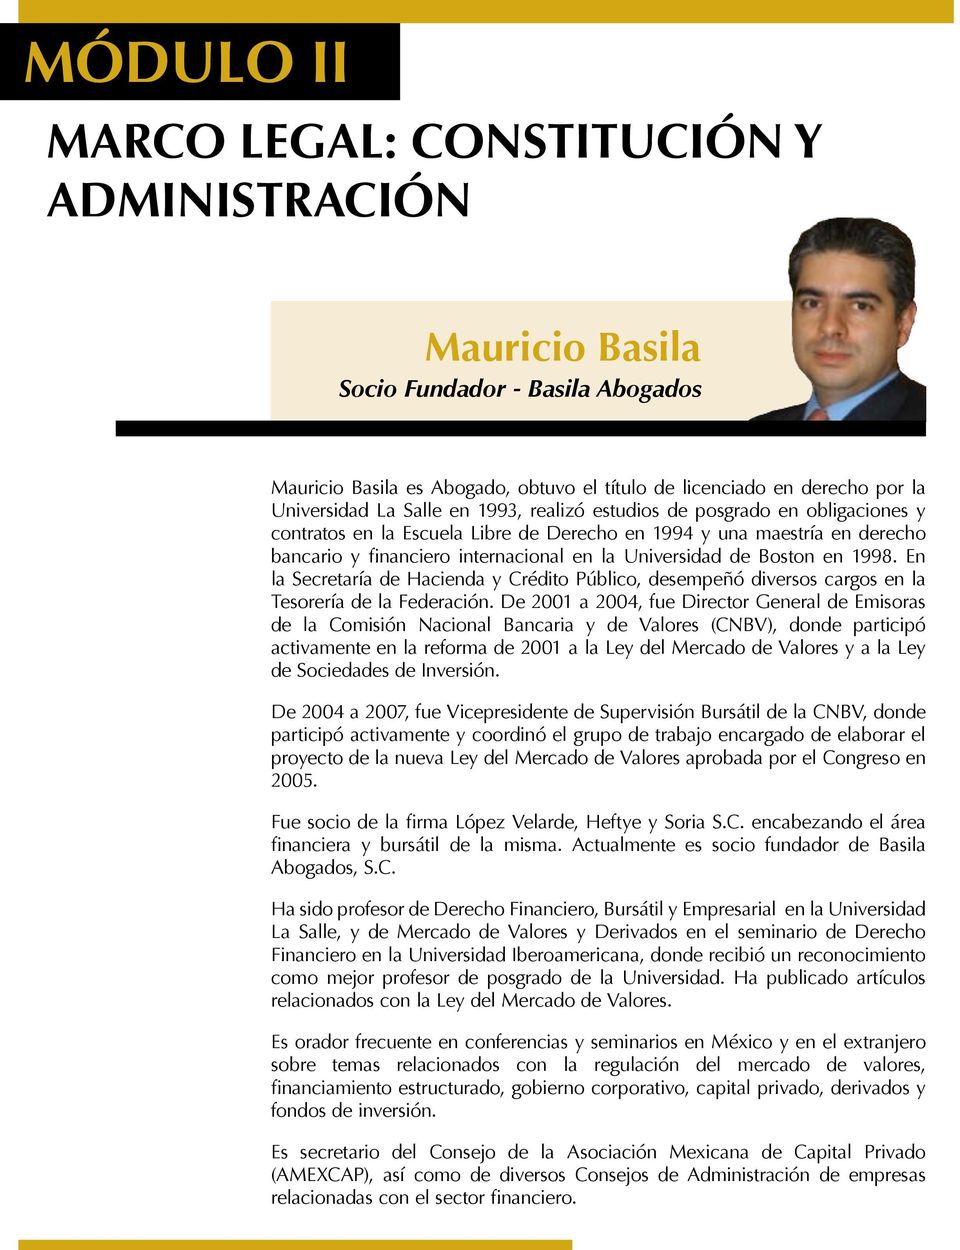 1998. En la Secretaría de Hacienda y Crédito Público, desempeñó diversos cargos en la Tesorería de la Federación.